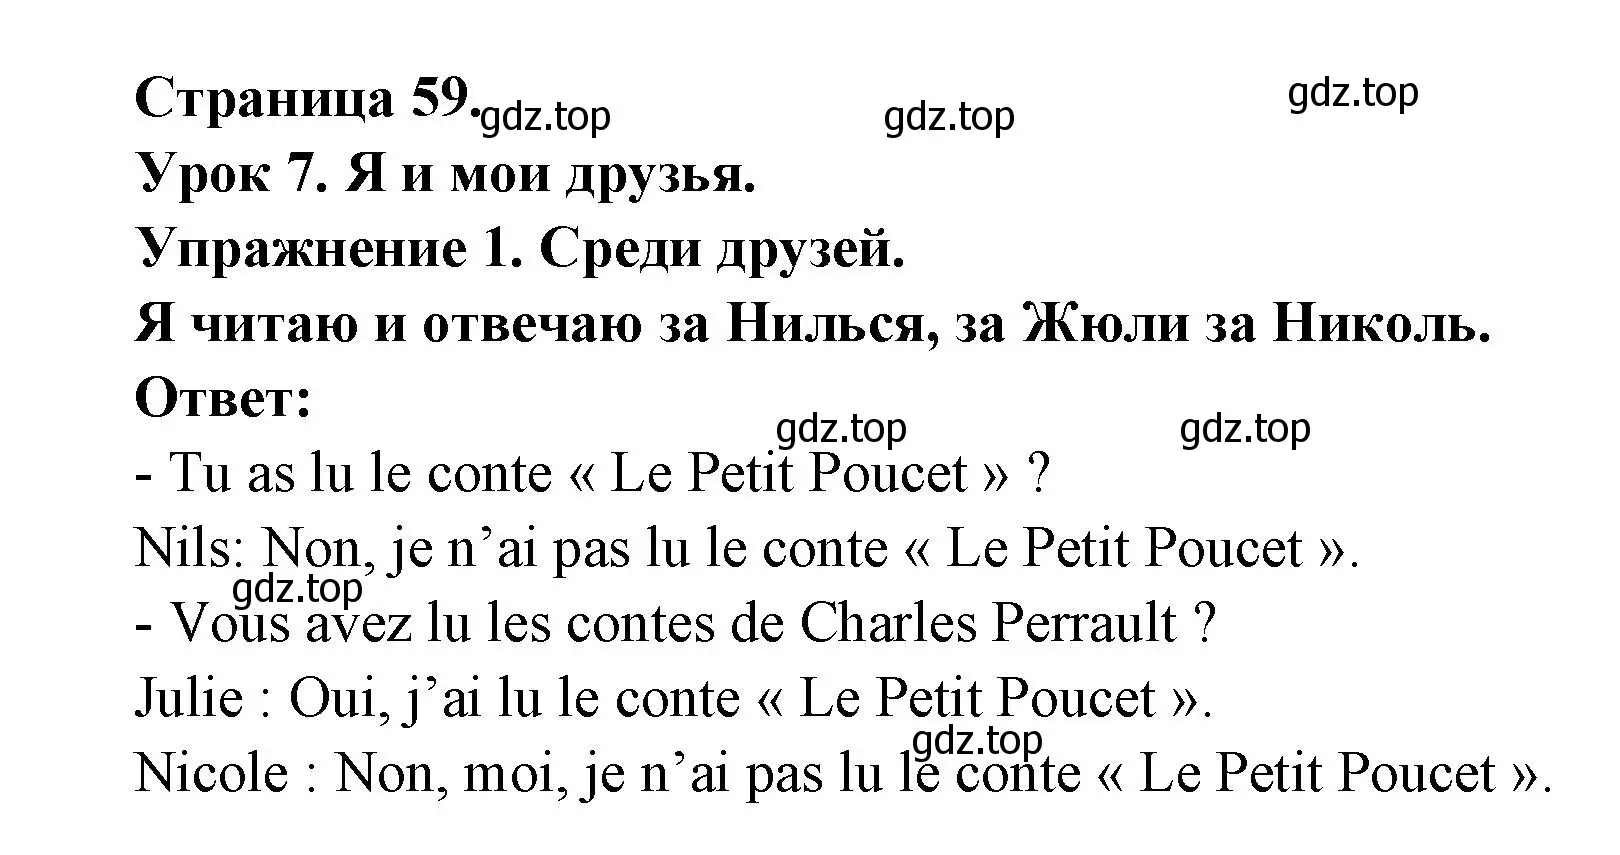 Решение  59 (страница 59) гдз по французскому языку 3 класс Кулигин, Кирьянова, учебник 2 часть